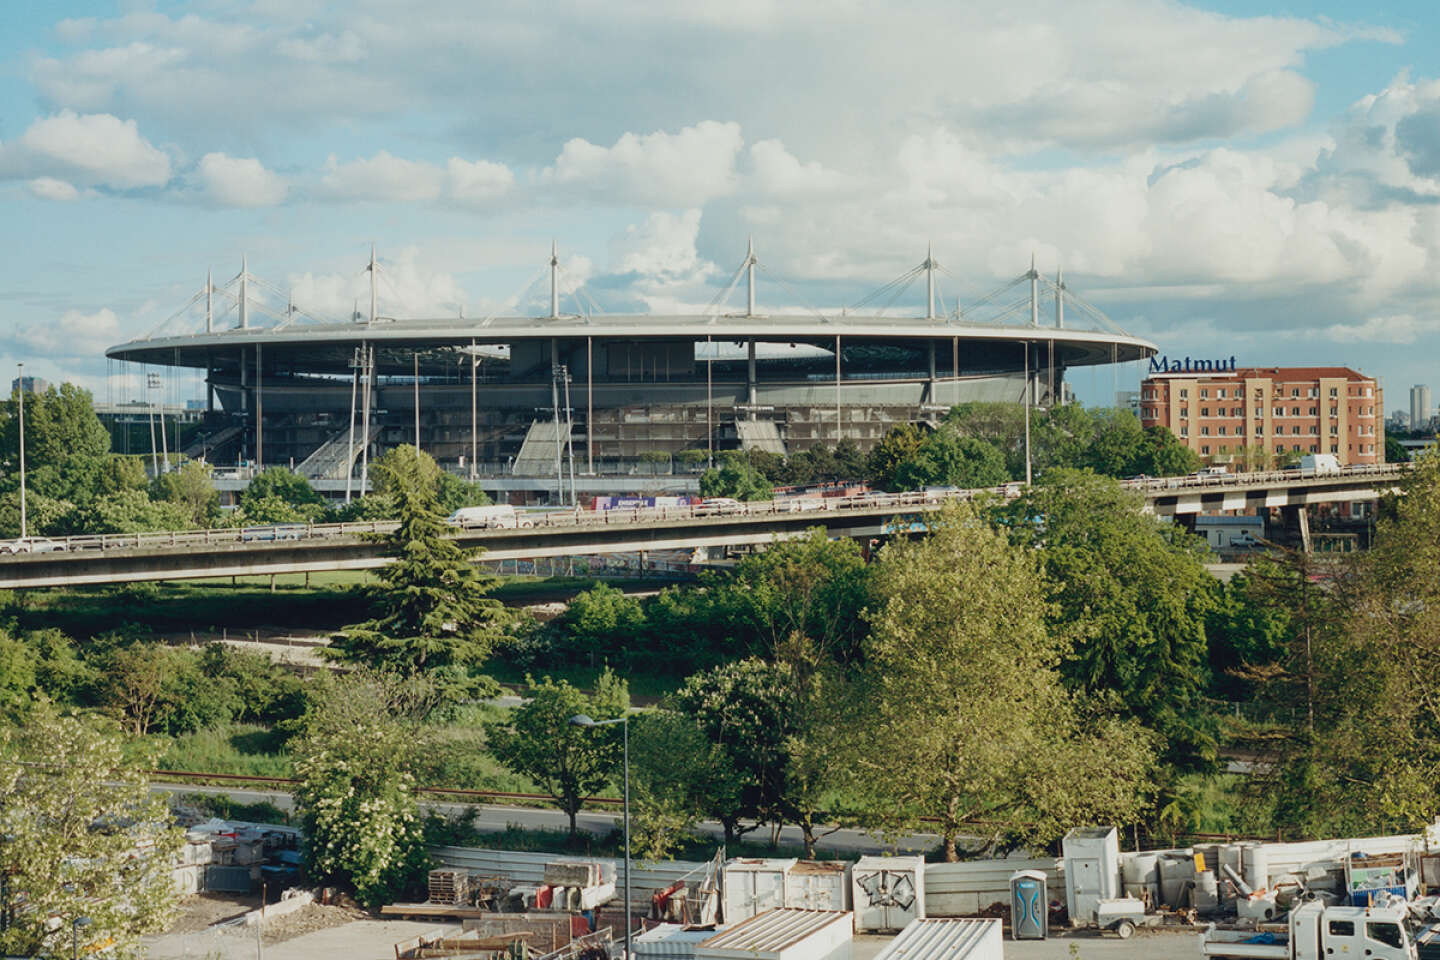 De la Coupe du monde 1998 aux Jeux olympiques 2024, le Stade de France, arène de toutes les promesses pour la banlieue